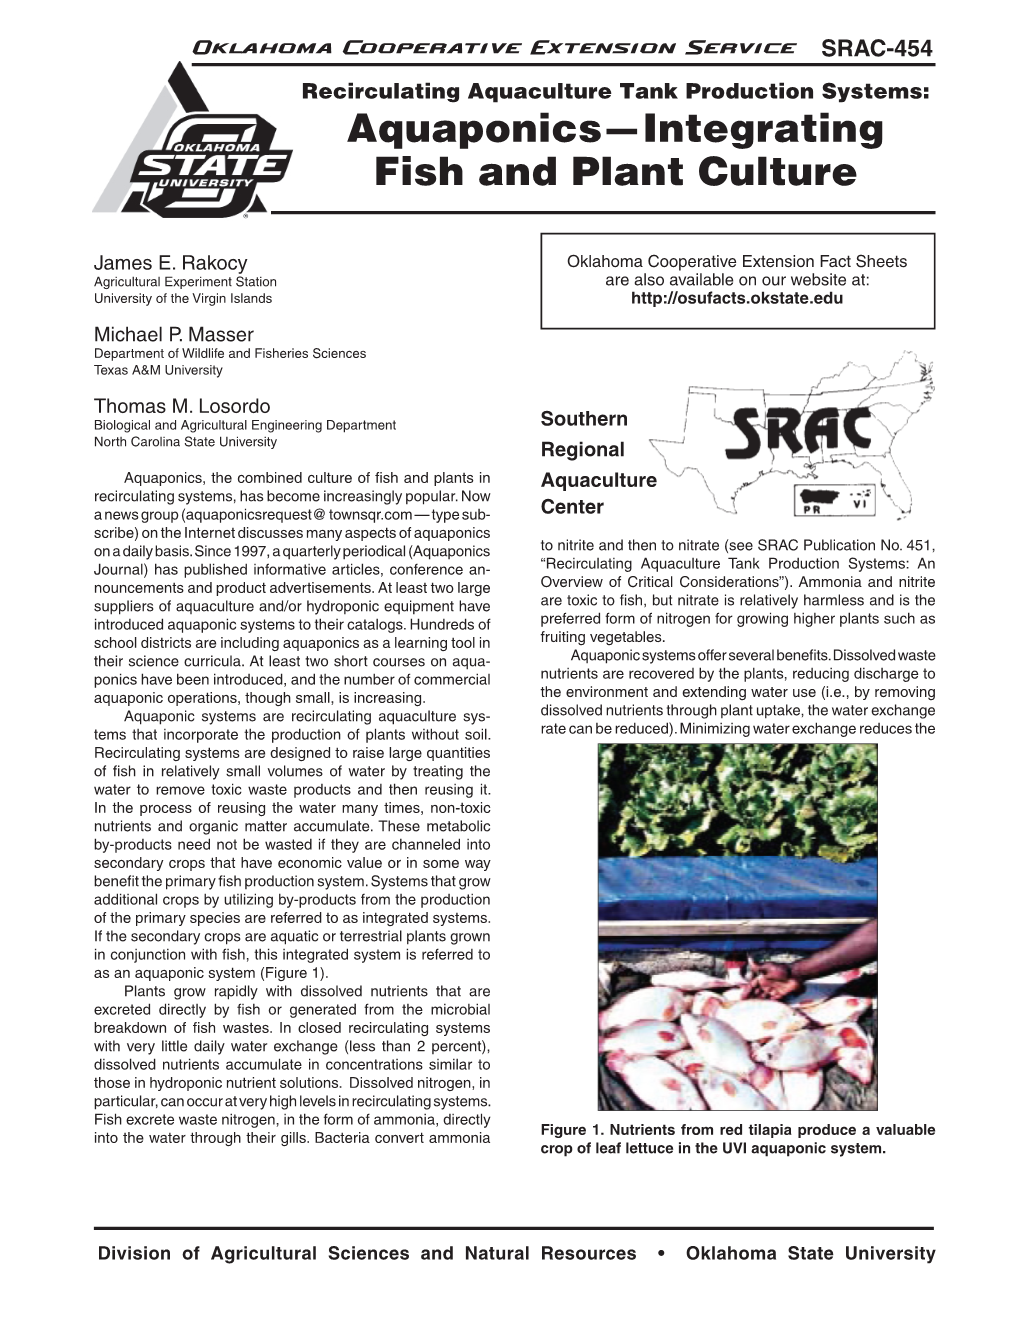 Aquaponics—Integrating Fish and Plant Culture